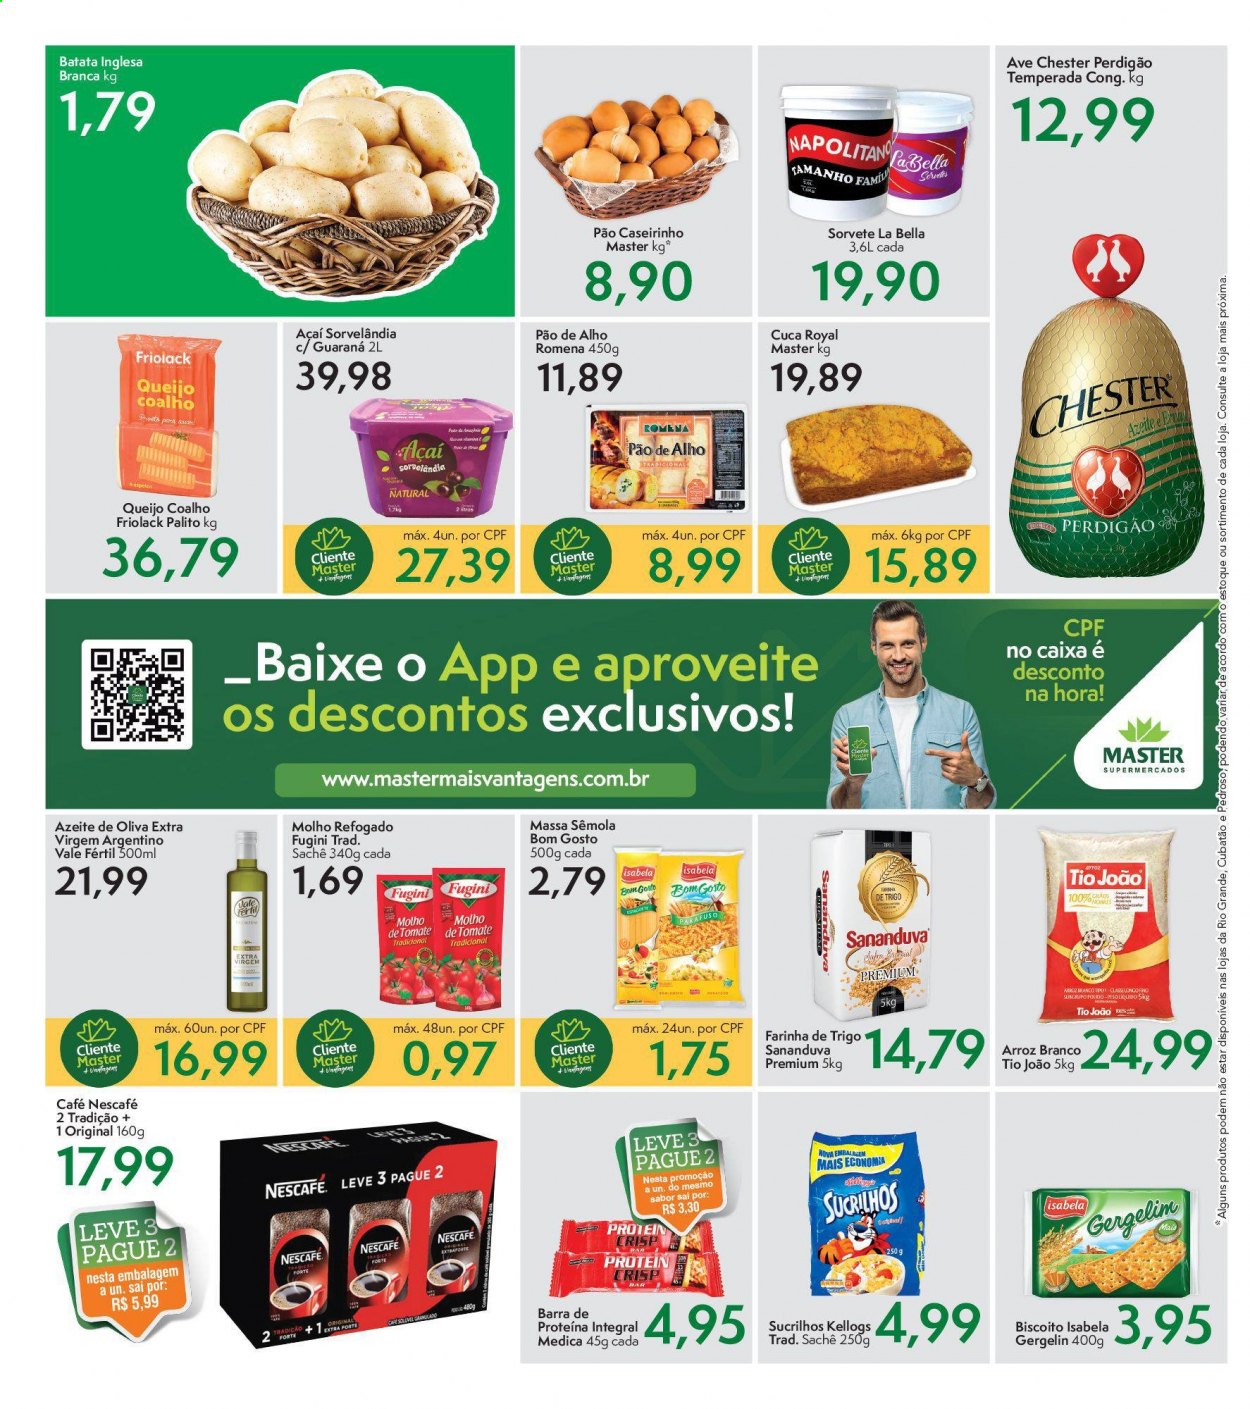 Encarte Master Supermercados  - 26.02.2021 - 01.03.2021.